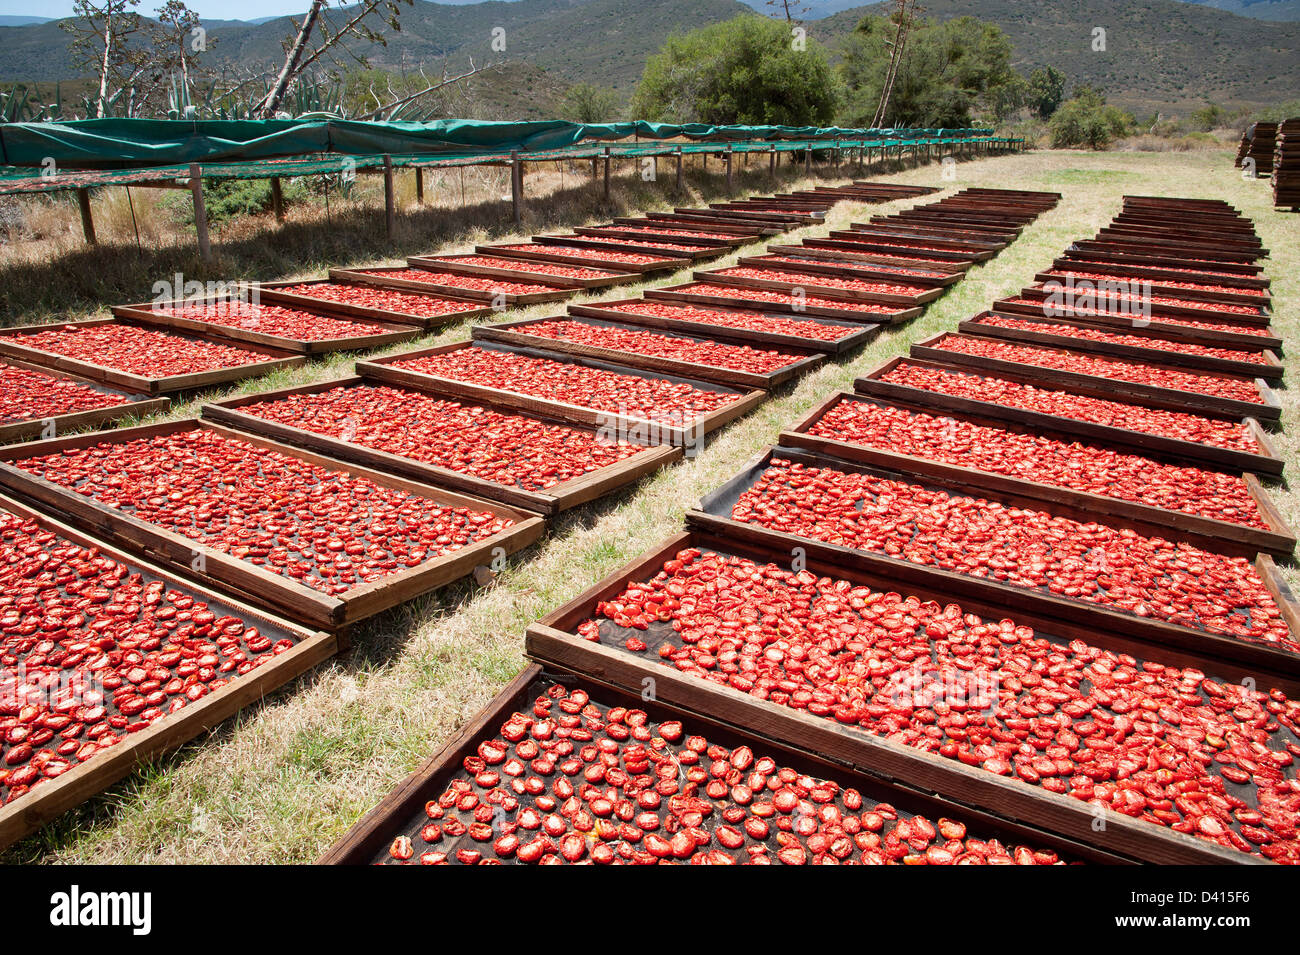 Tomaten Trocknen auf Gestellen in der Sonne auf einer Montagu-Farm in Südafrika Western Cape Stockfoto